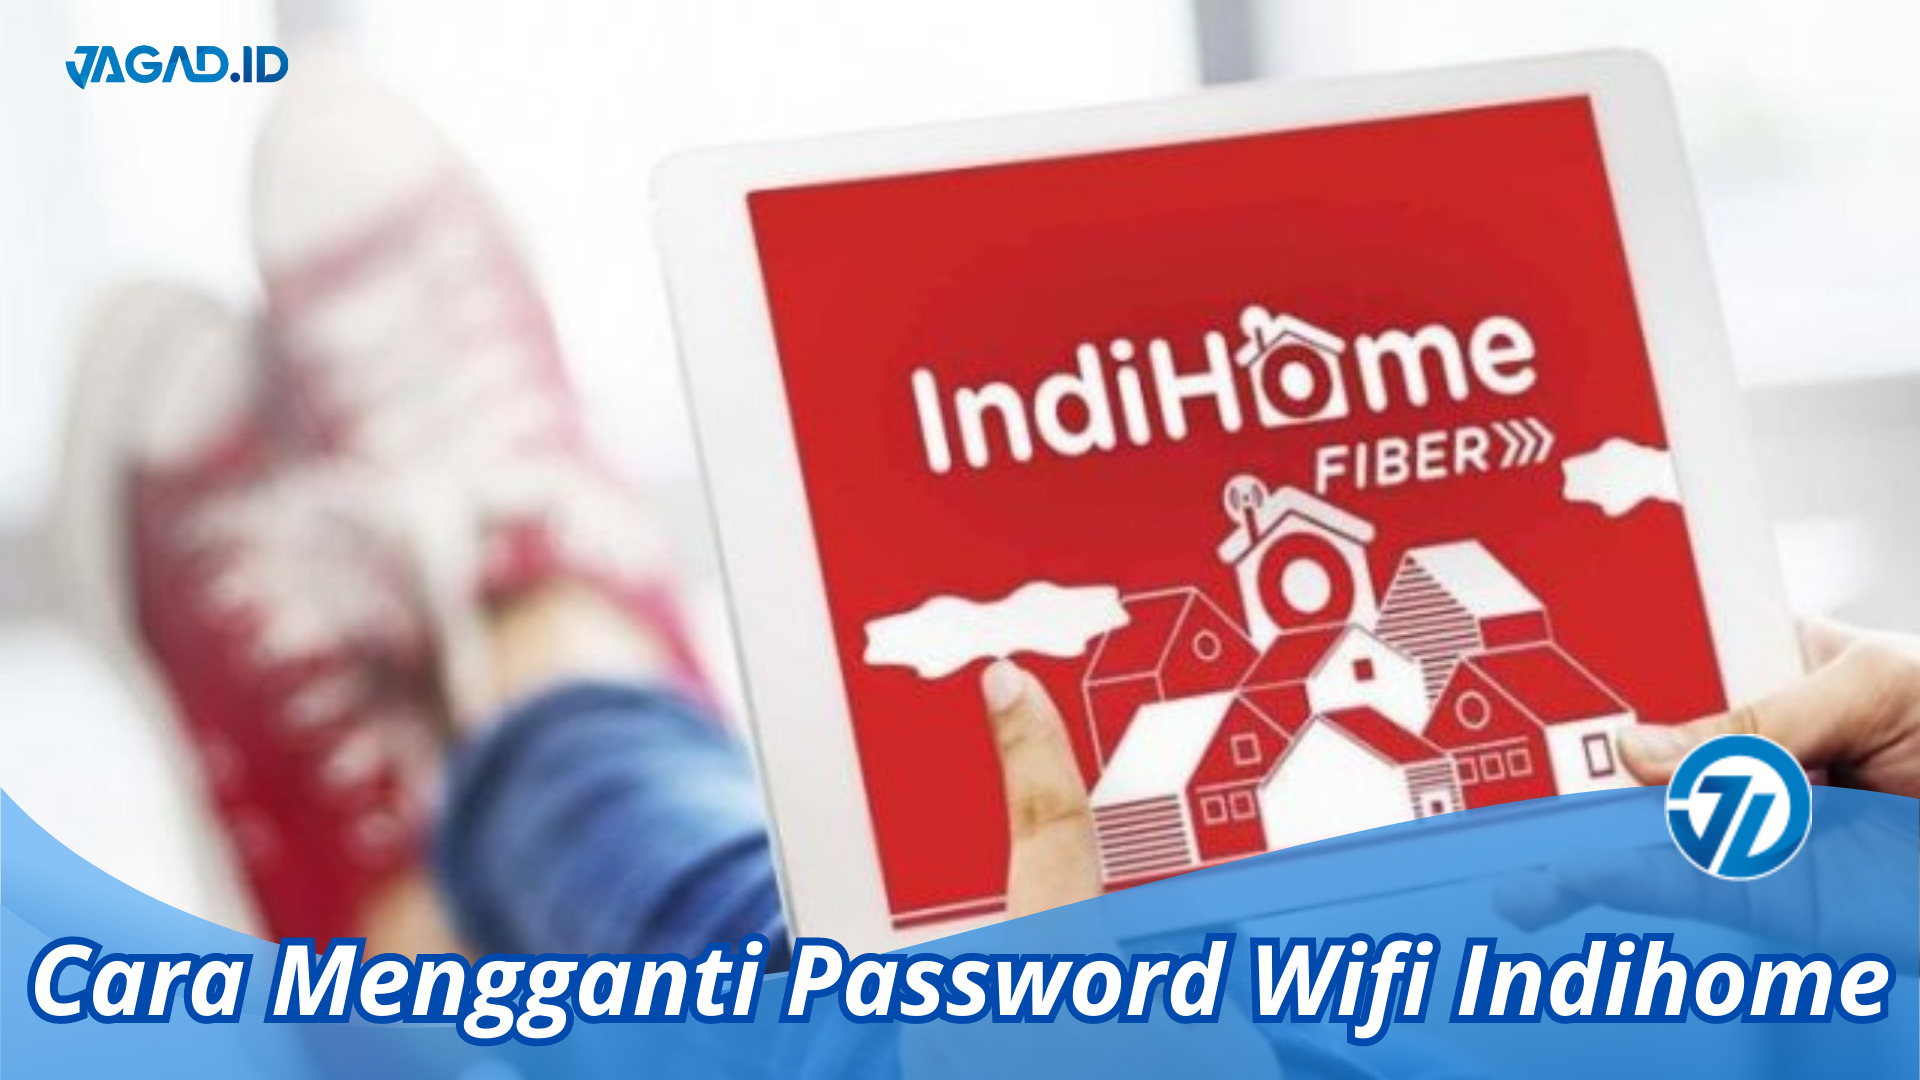 Cara Mengganti Password Wifi Indihome